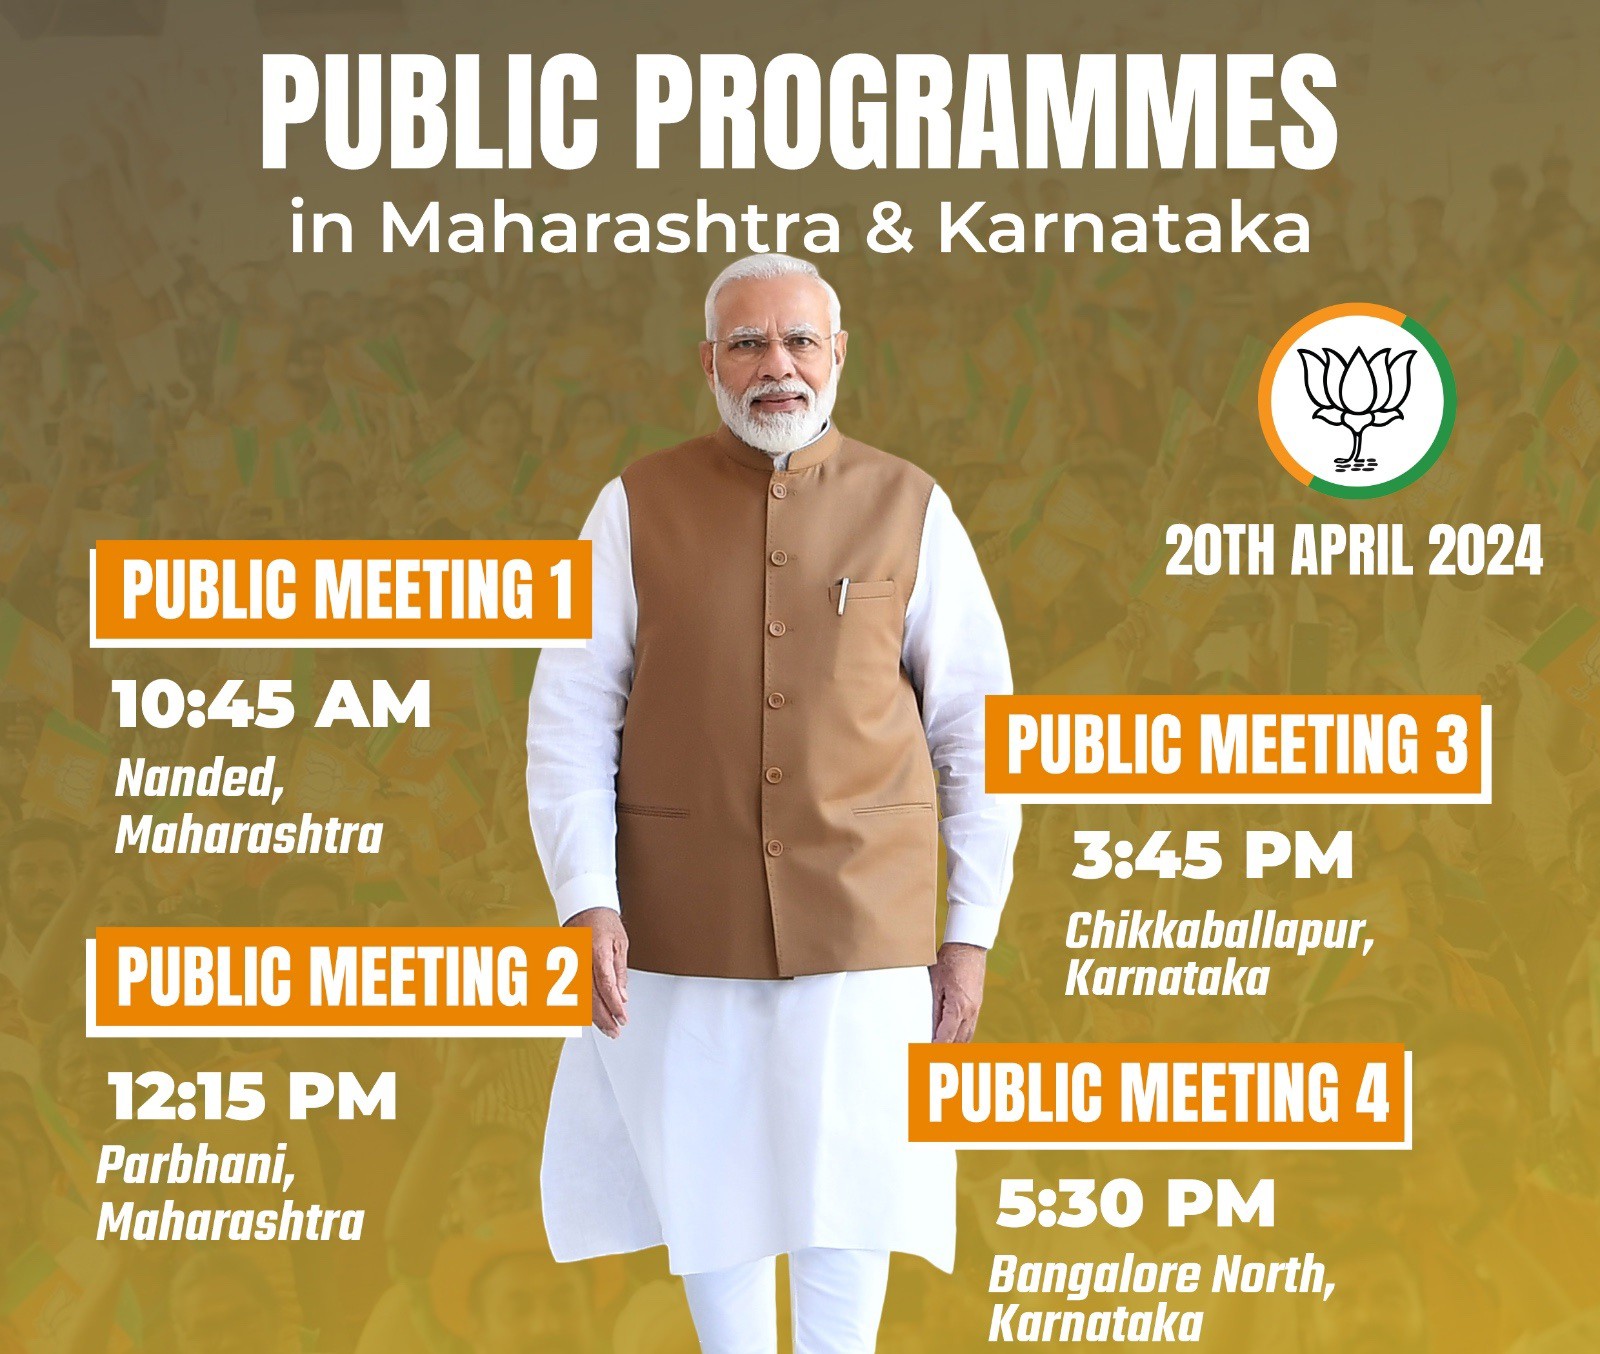 प्रधानमंत्री मोदी आज महाराष्ट्र और कर्नाटक में चार स्थानों पर भाजपा की जनसभा को करेंगे संबोधित